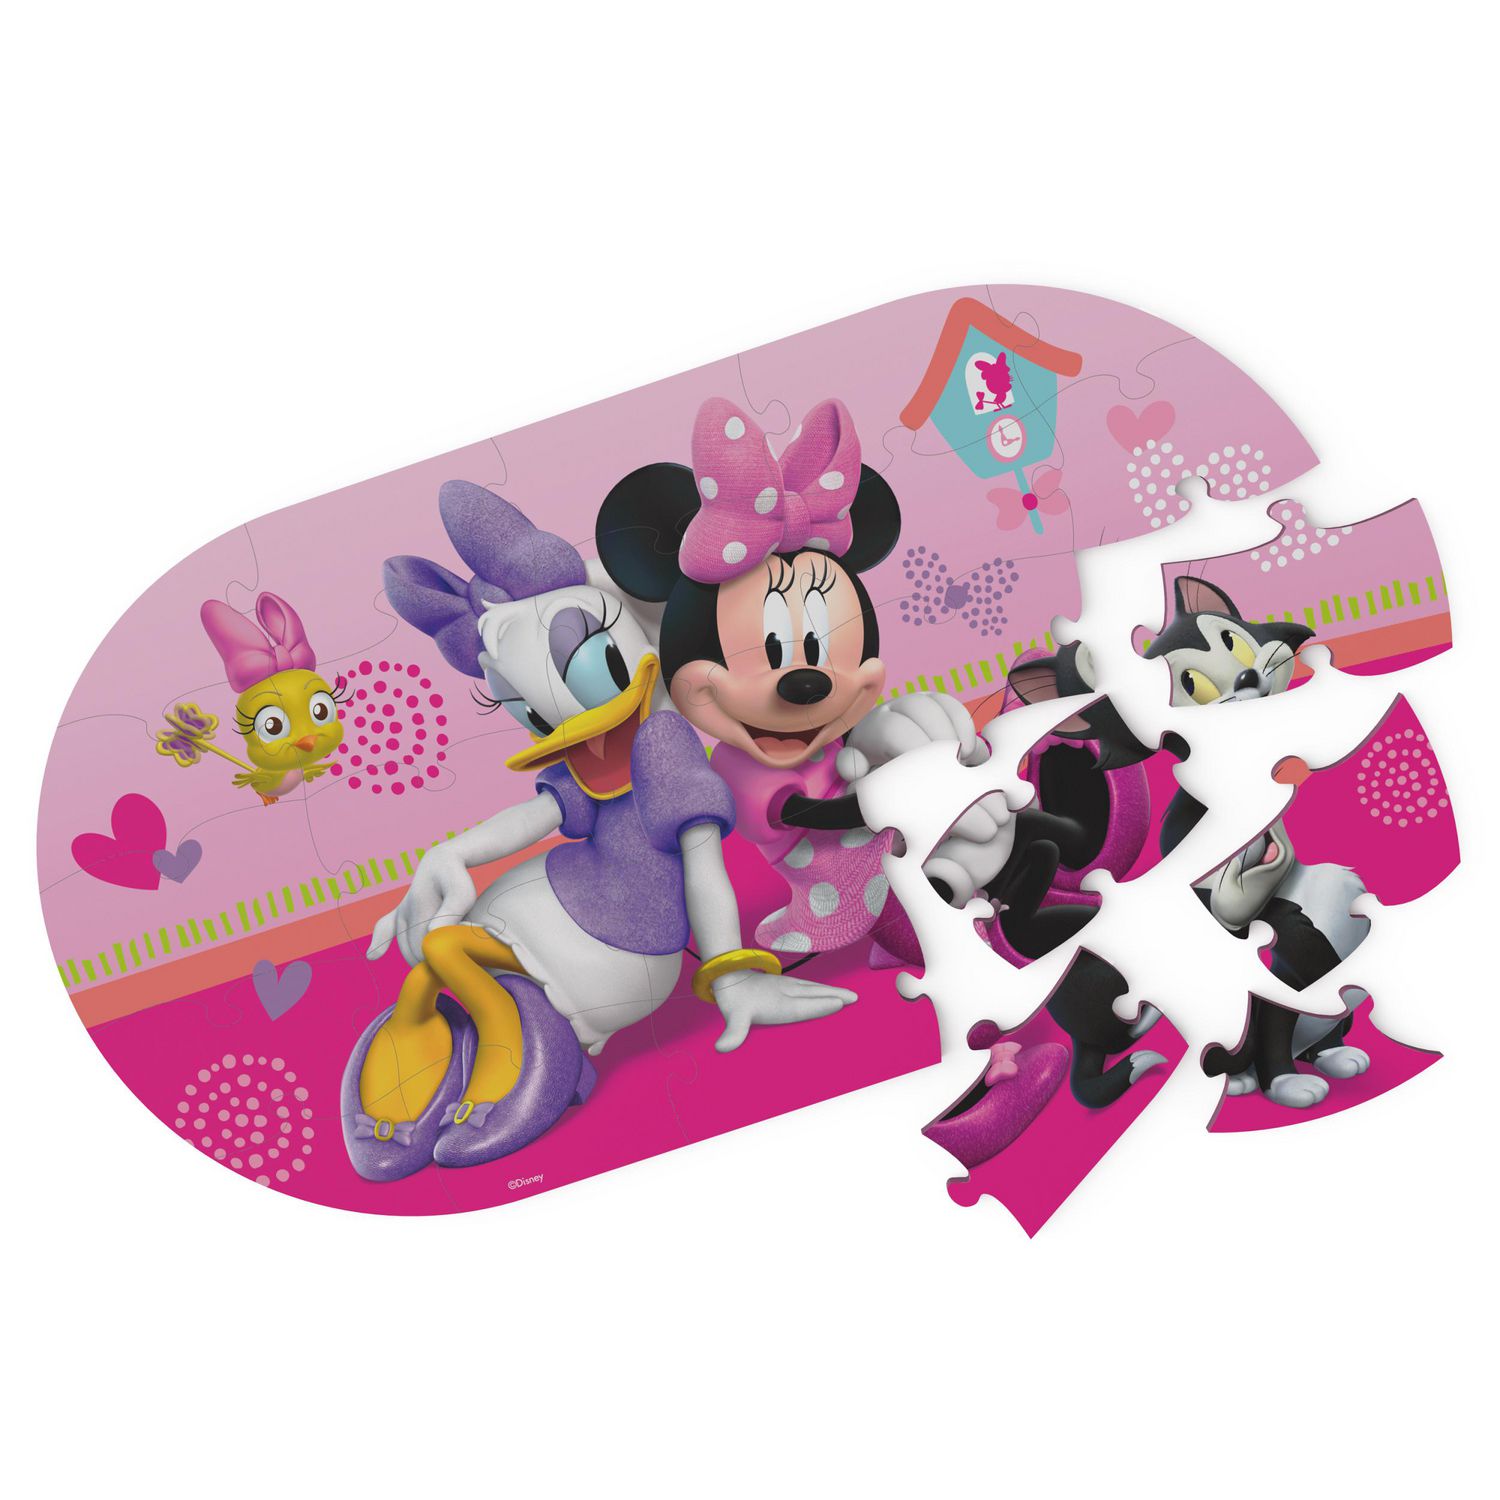 Puzzle magnétique Minnie woodmax Disney, jouets pour enfants de 3 ans,  Puzzle Disney, jouets Minnie Mouse